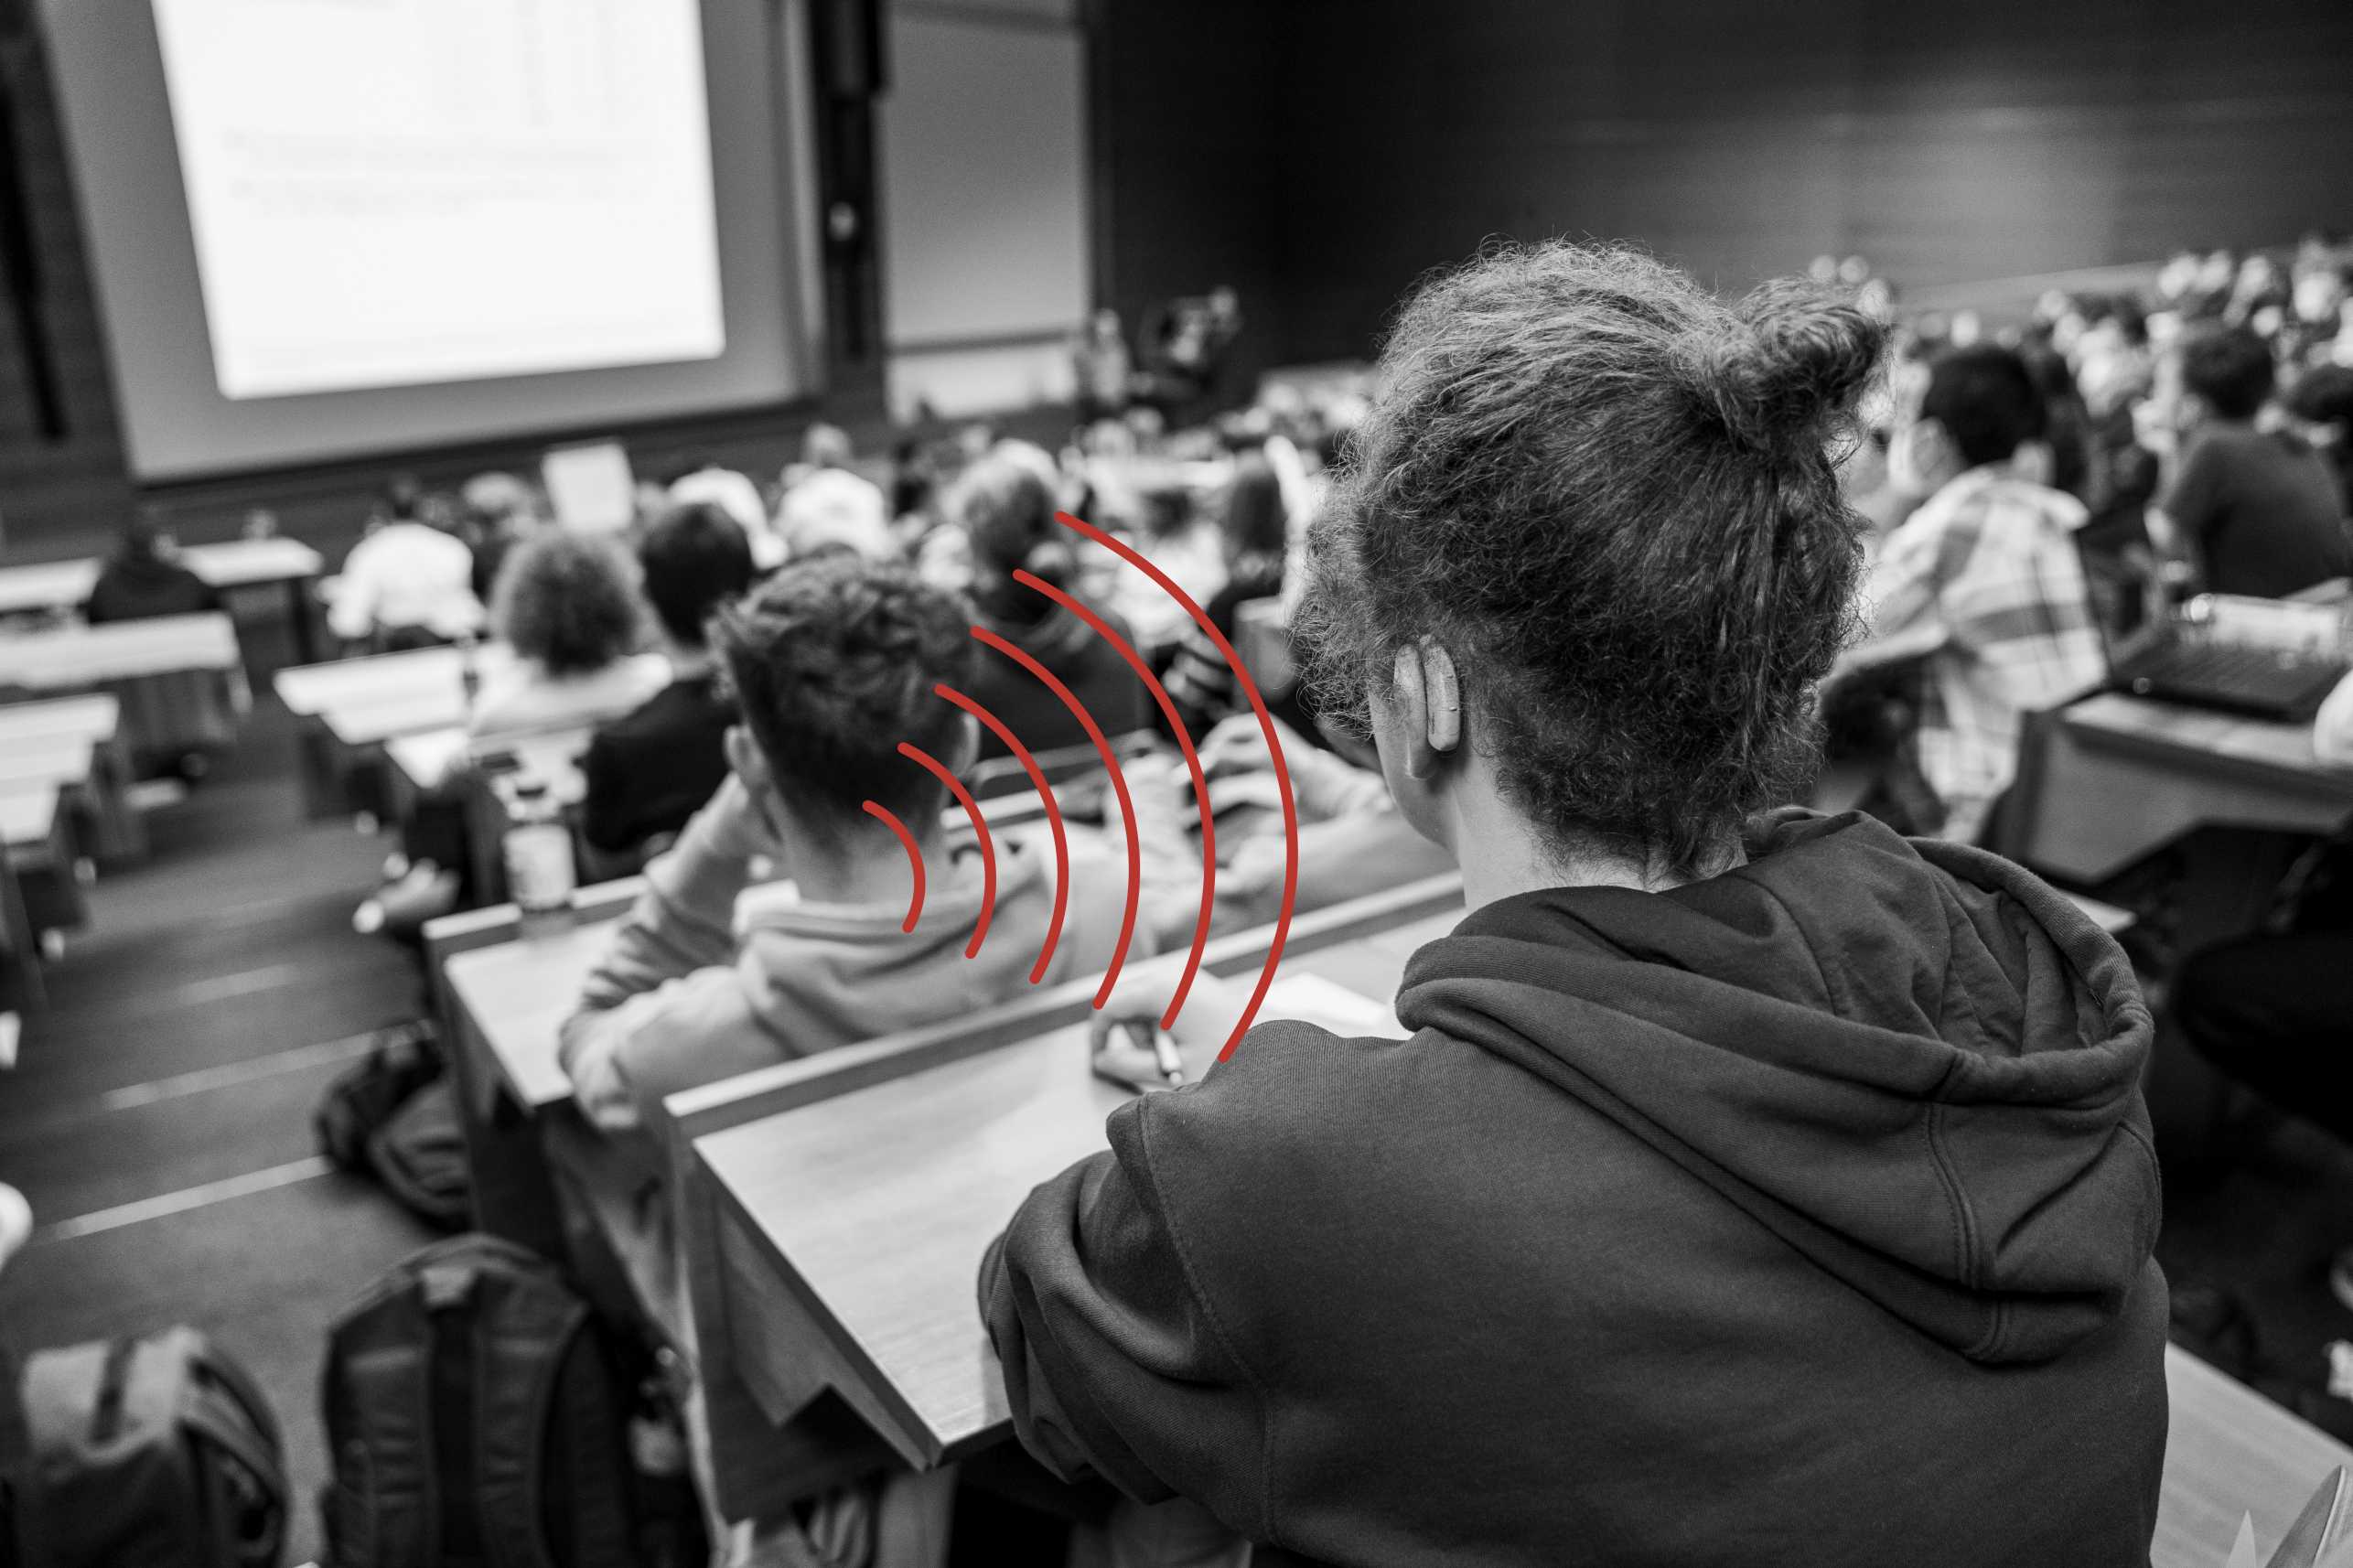 Vergr?sserte Ansicht: In einem Hörsaal voller Studierenden sitzt ein Student mit einem Hörgerät, welches die akustischen Signale über eine Induktionsschlaufe aufnimmt. 